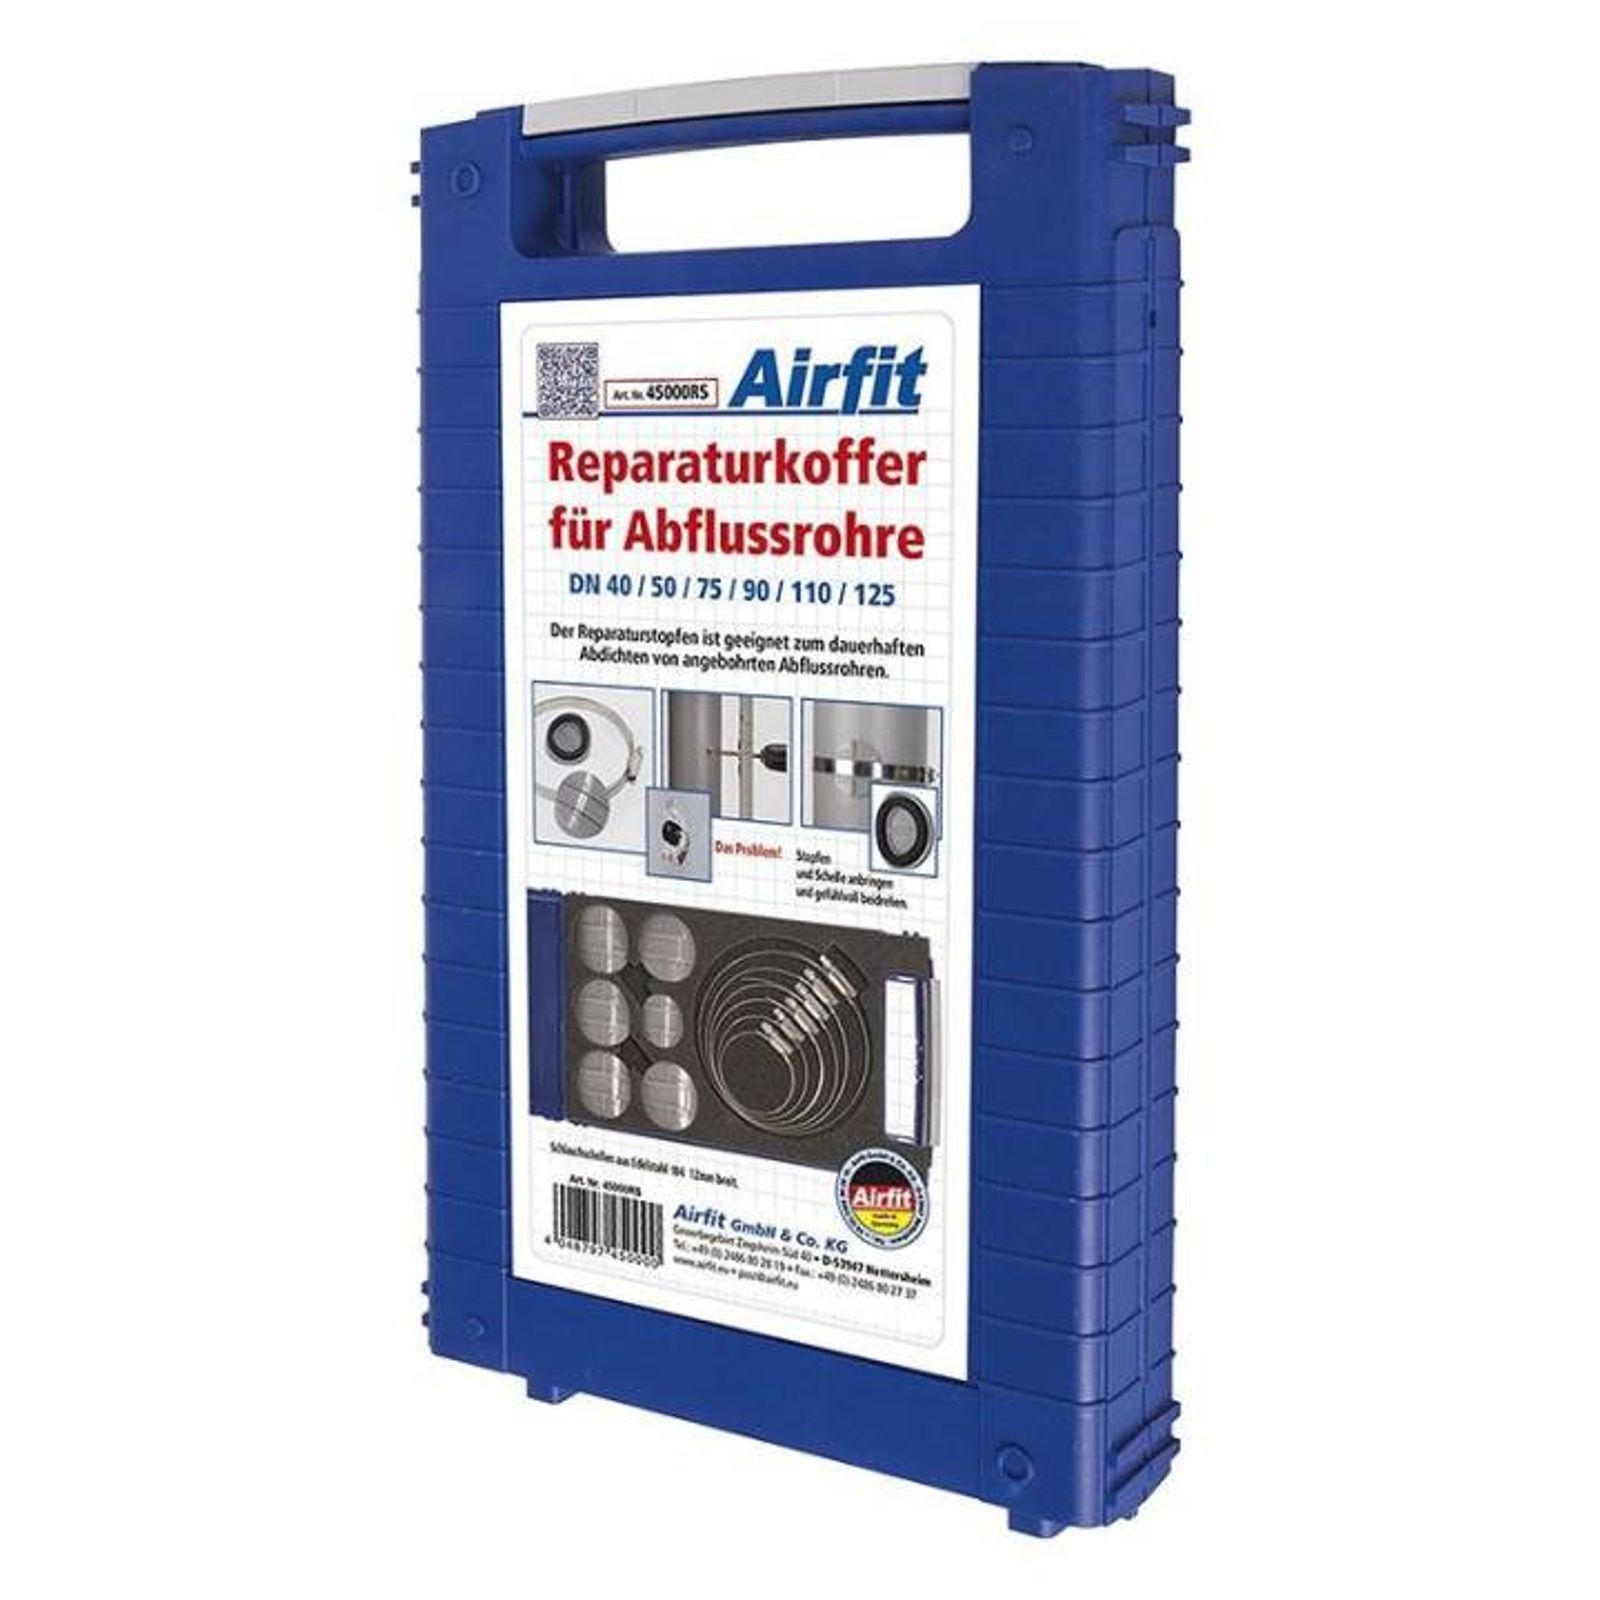 Airfit Reparaturkoffer für Abflussrohre